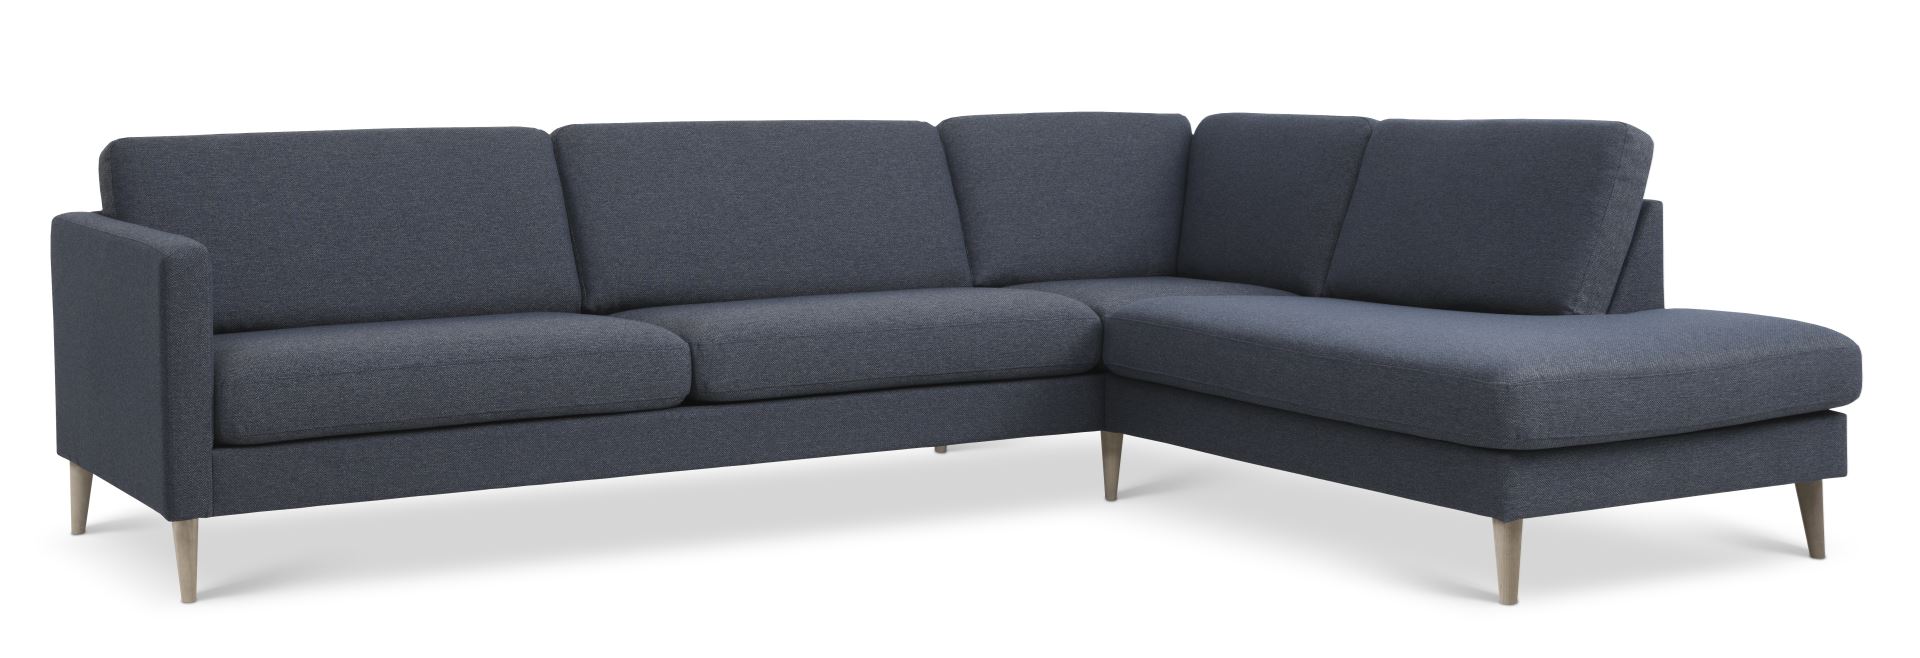 Ask sæt 61 stor OE sofa, m. højre chaiselong - navy blåt polyester stof og natur træ